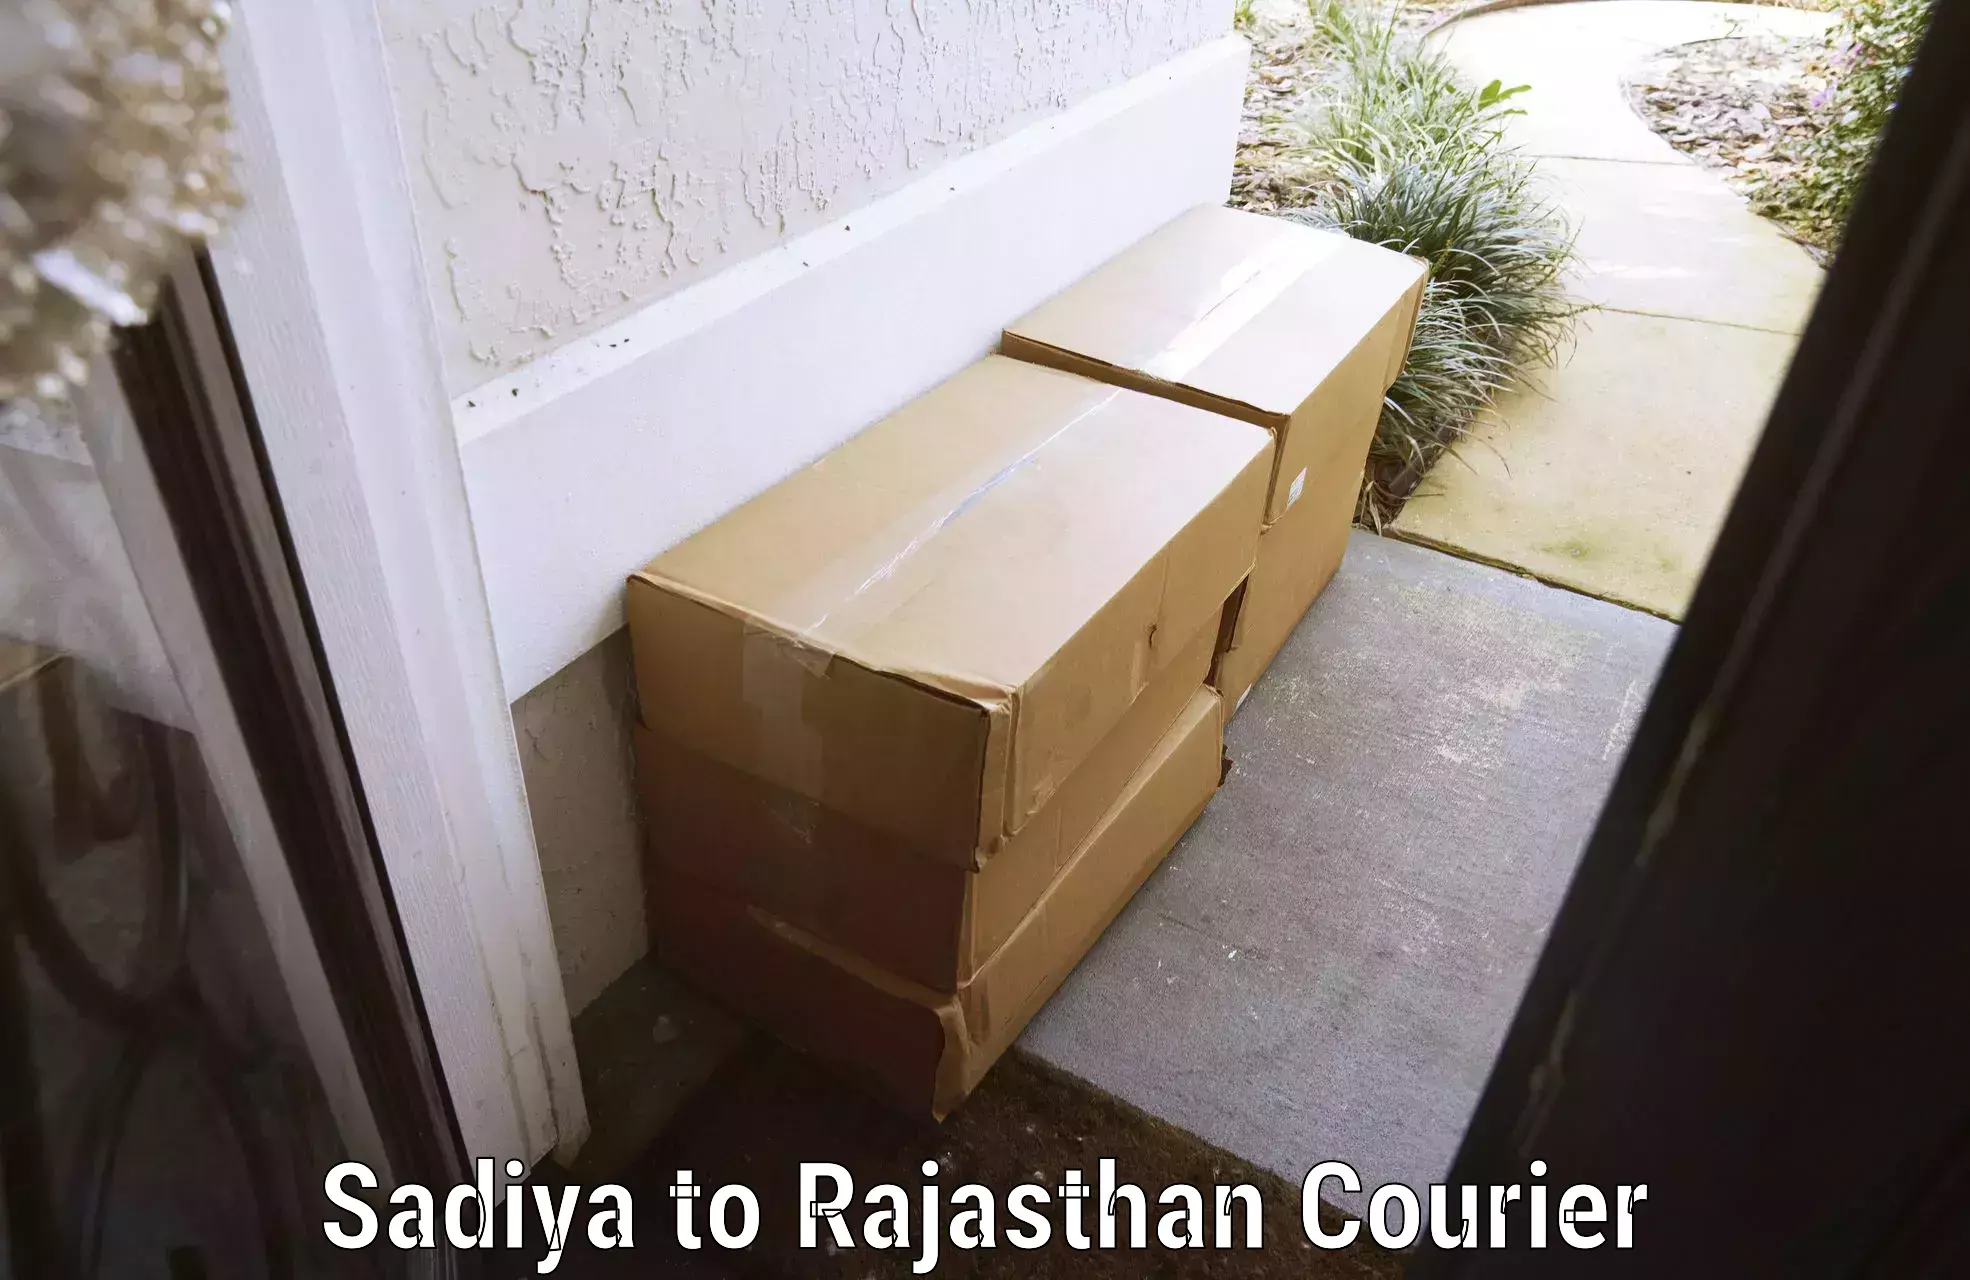 Emergency baggage service Sadiya to Rajasthan